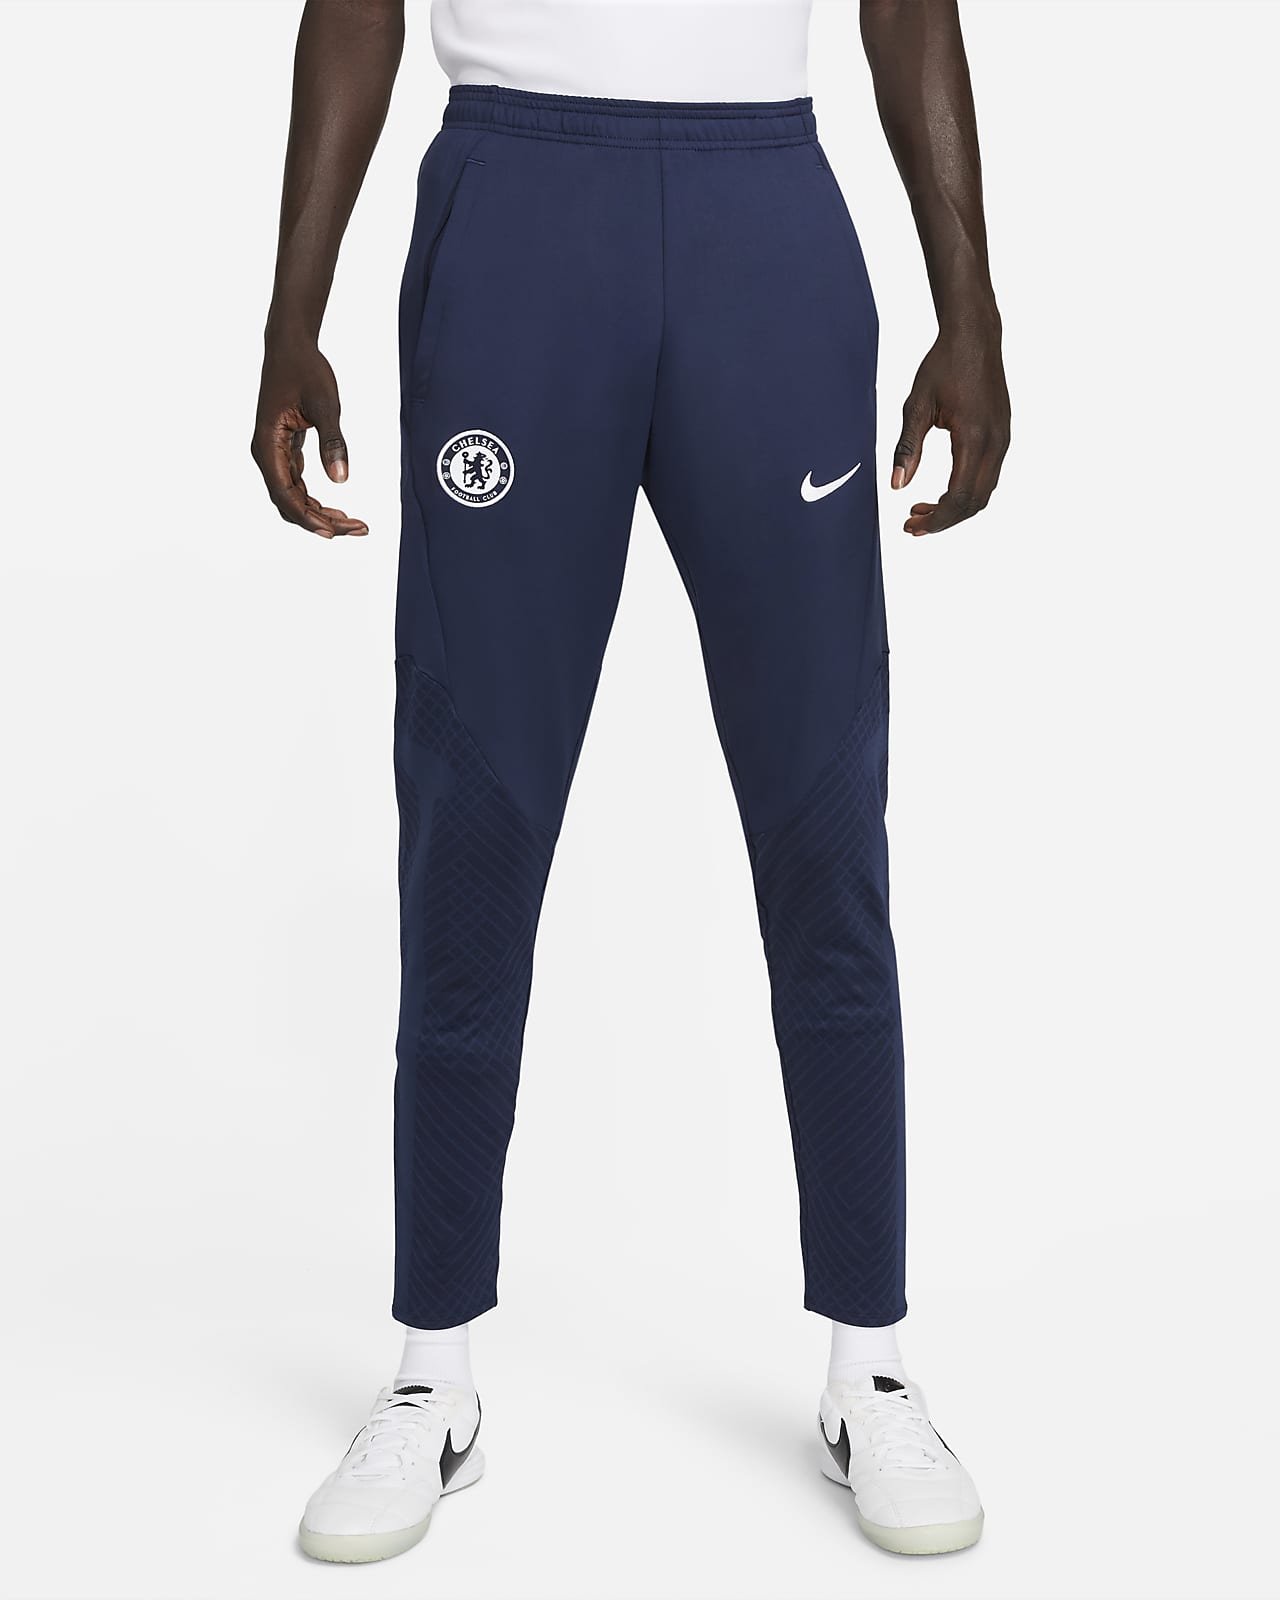 Vlek Omgekeerd voordat Chelsea FC Strike Men's Nike Dri-FIT Soccer Pants. Nike.com